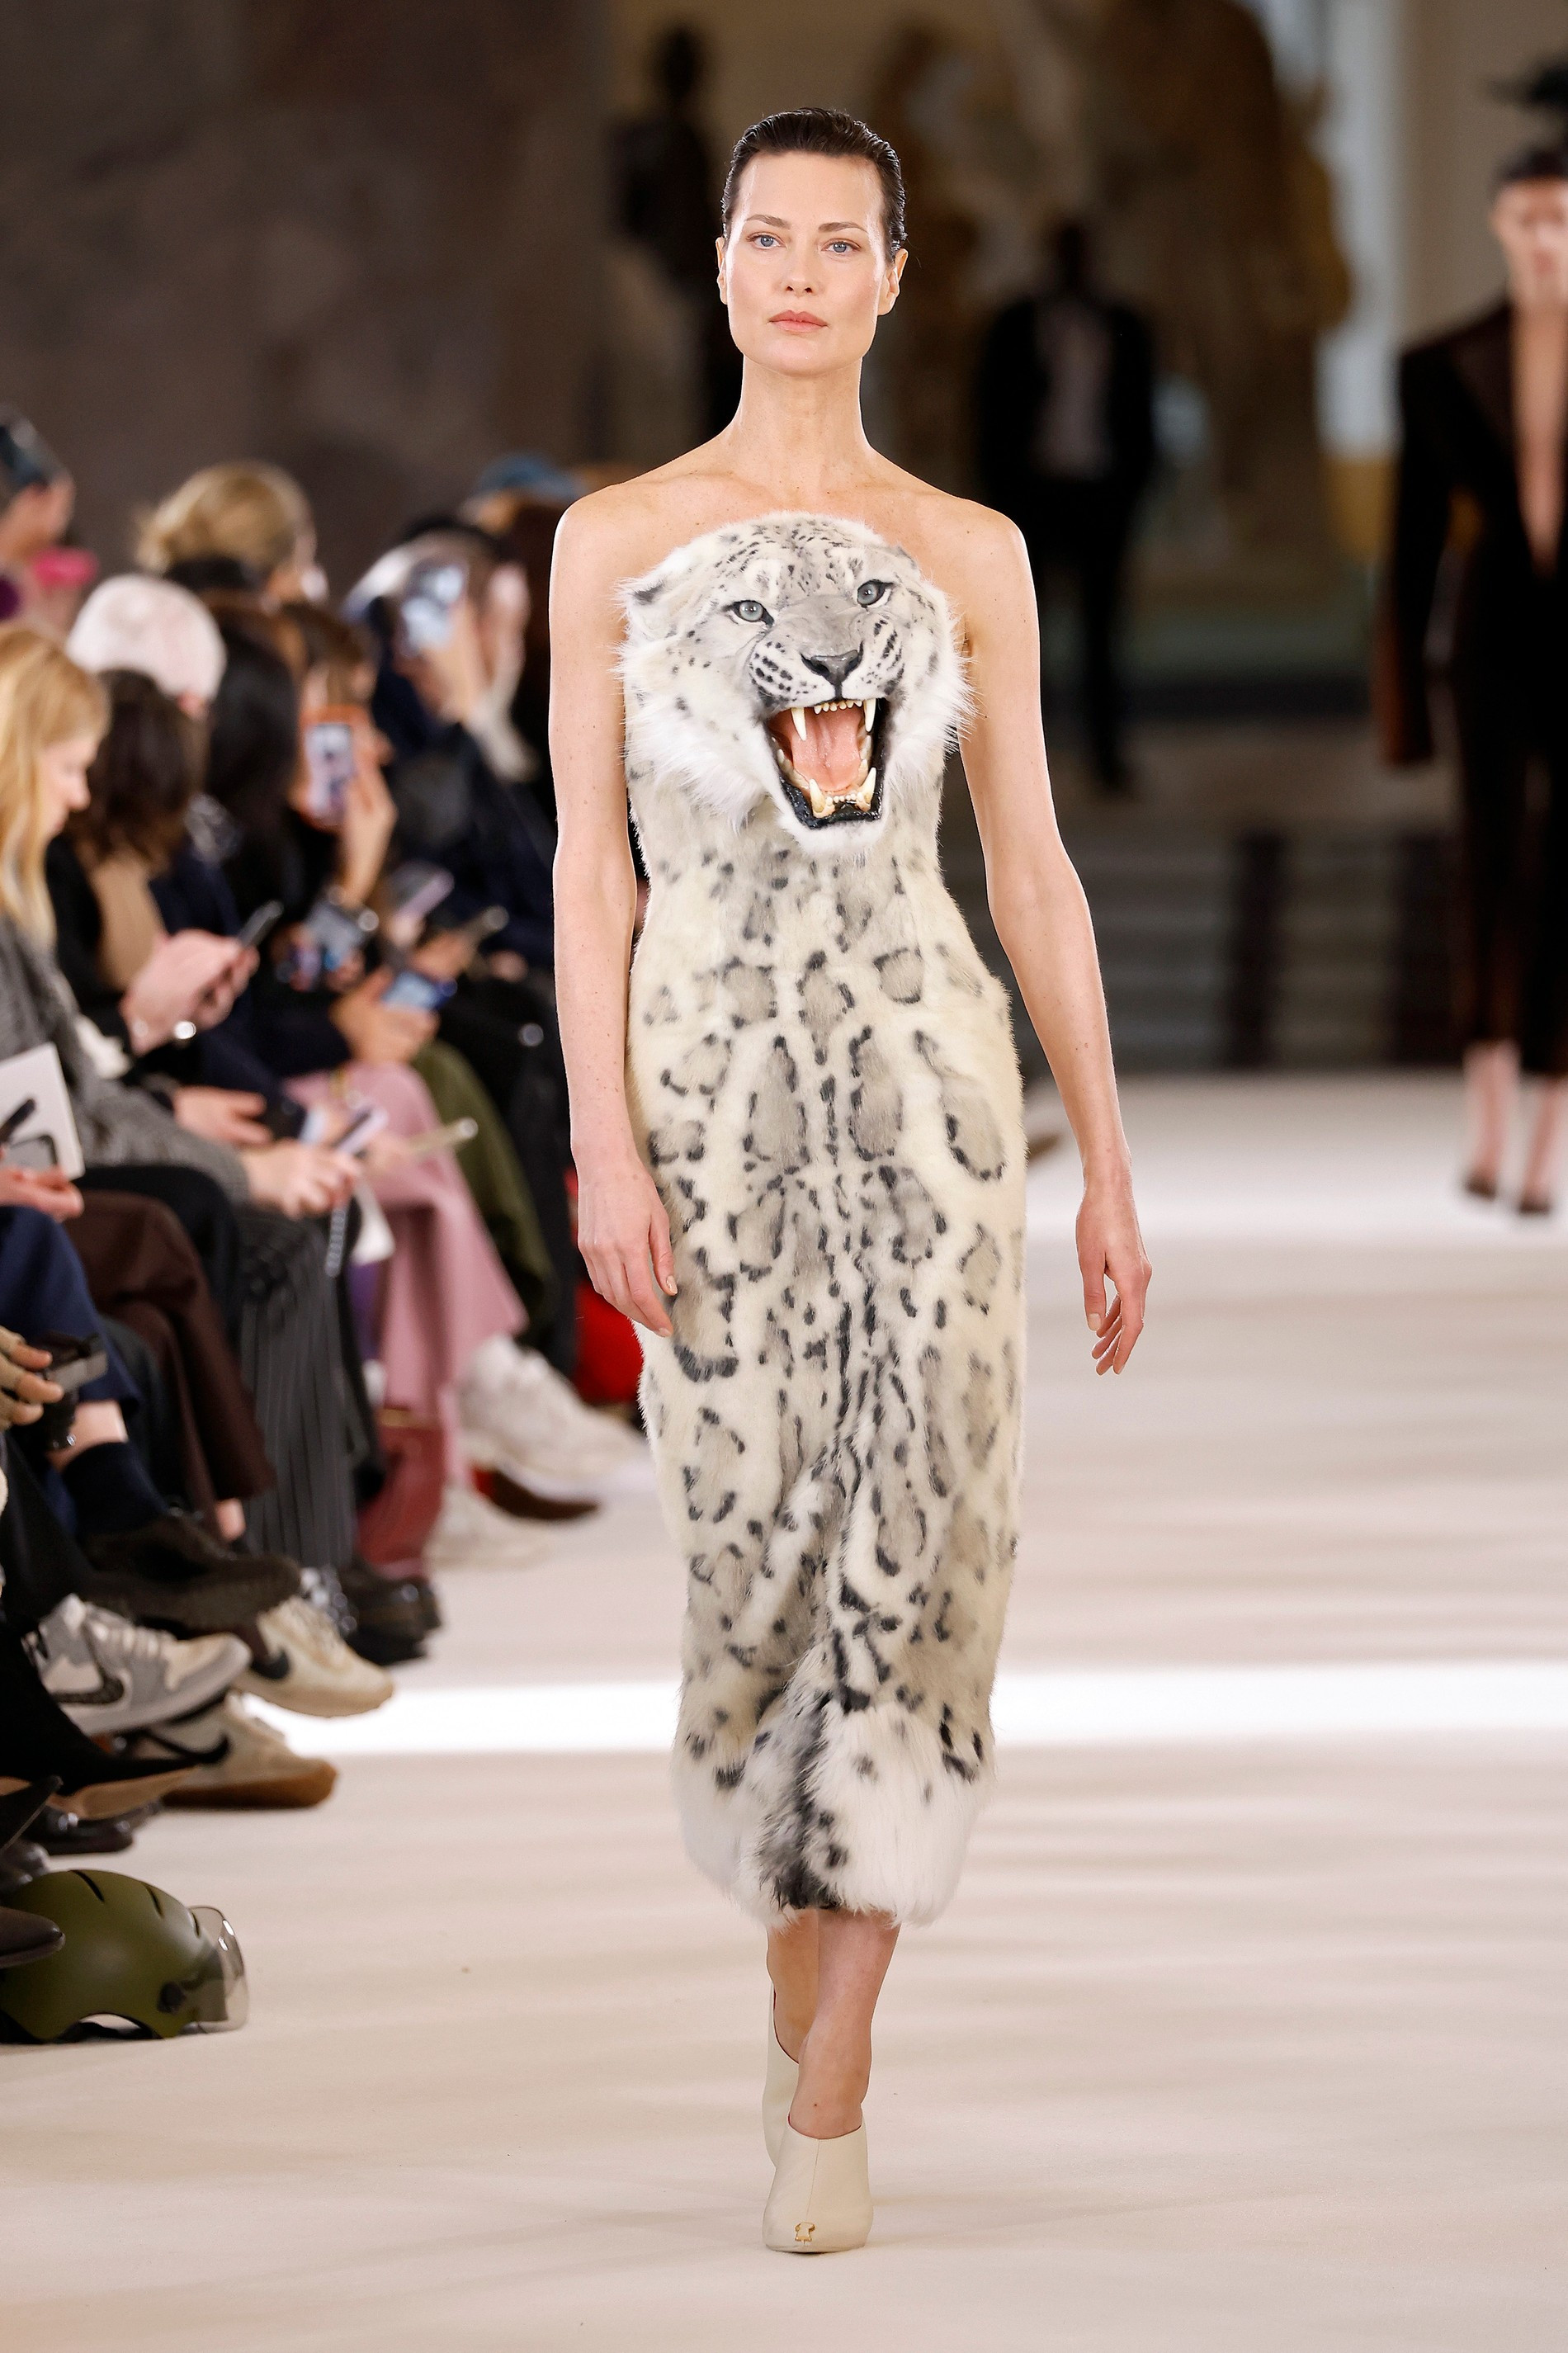 Шалом Харлоу в образе леопарда на показе Schiaparelli Couture Spring 2023
Фото: Getty